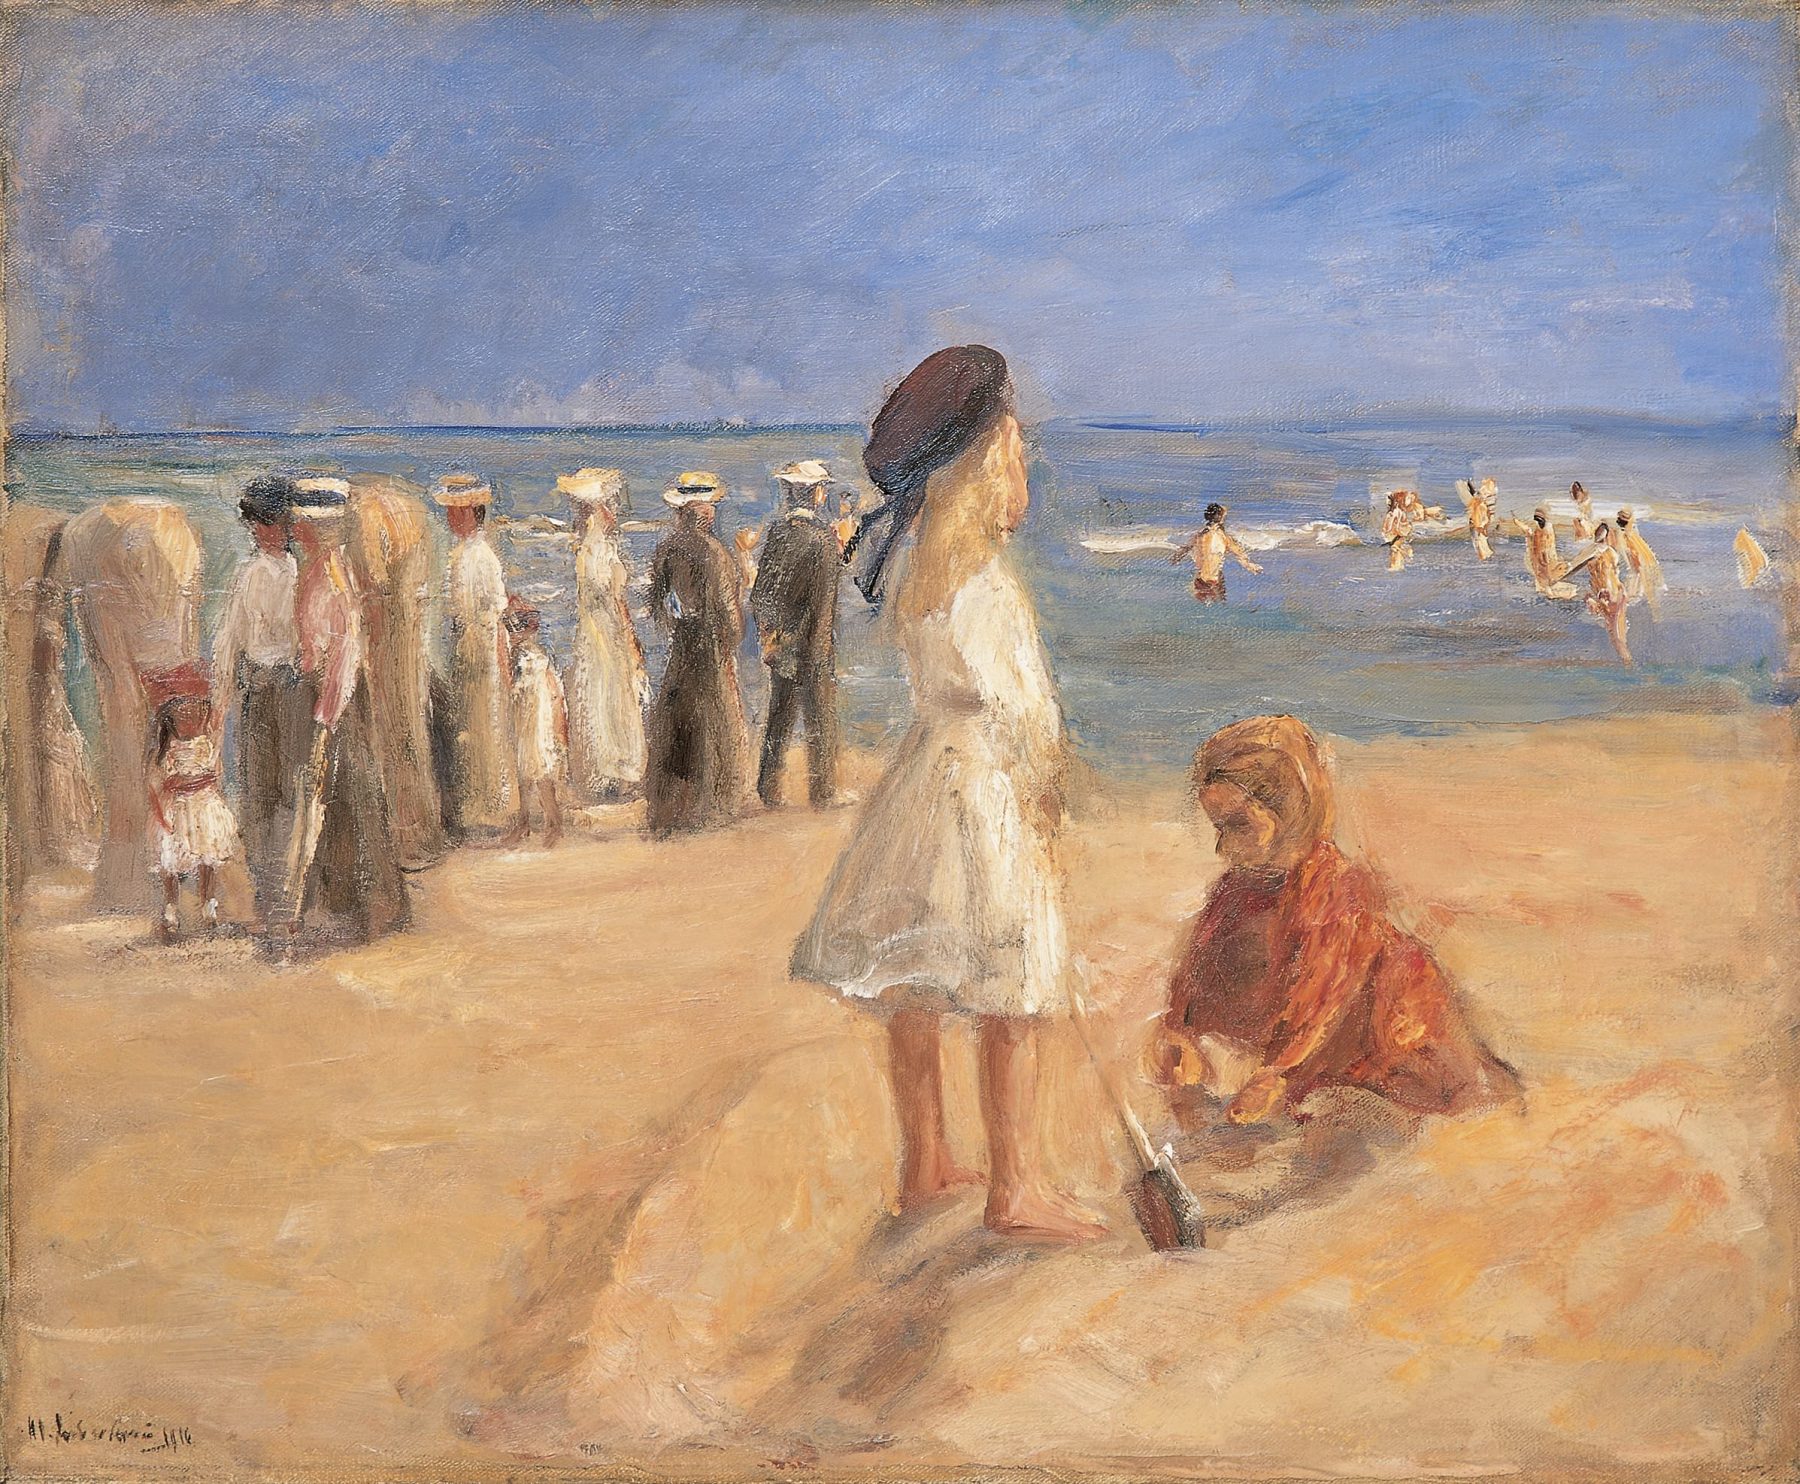 Gemälde einer Strandszene mit mehreren Personen am Meer. Im Vordergrund spielen zwei Kinder.